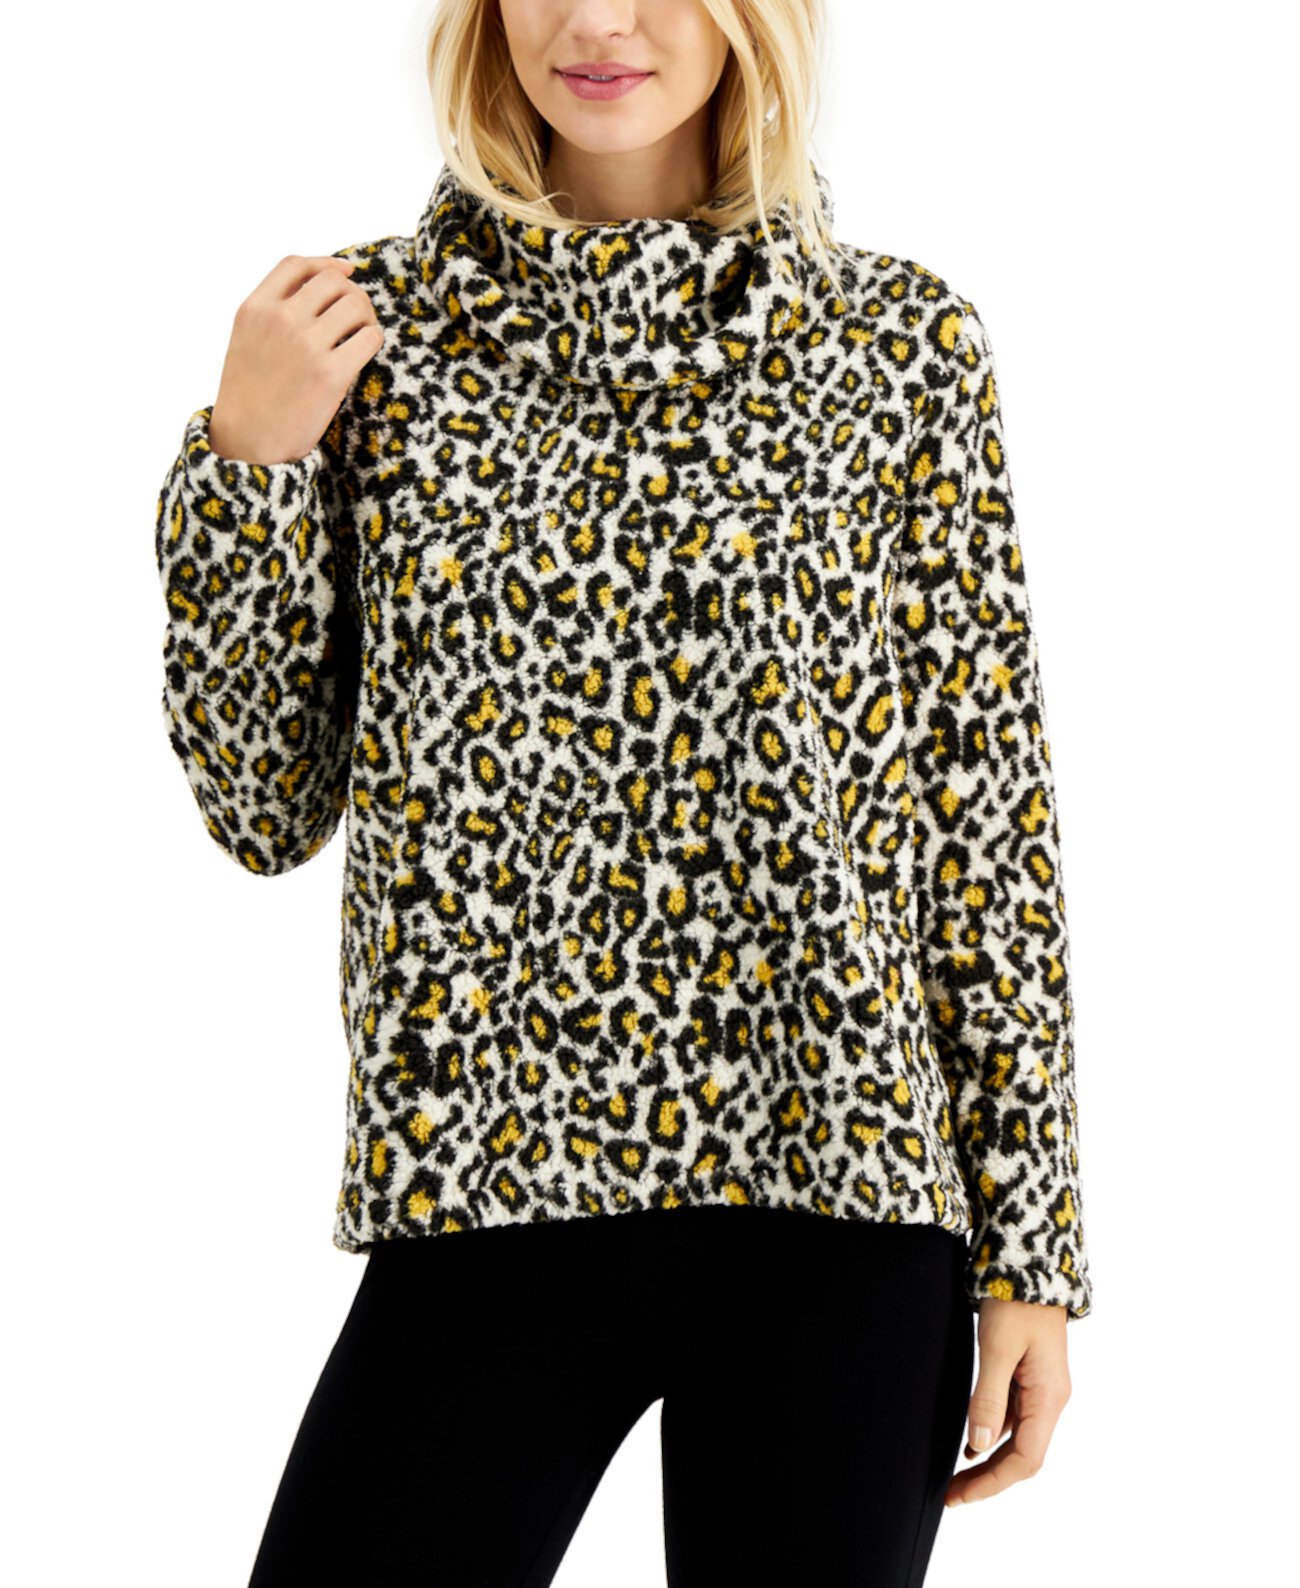 Миниатюрный пуловер с воротником-хомутом и анималистическим принтом, созданный для Macy's Style & Co